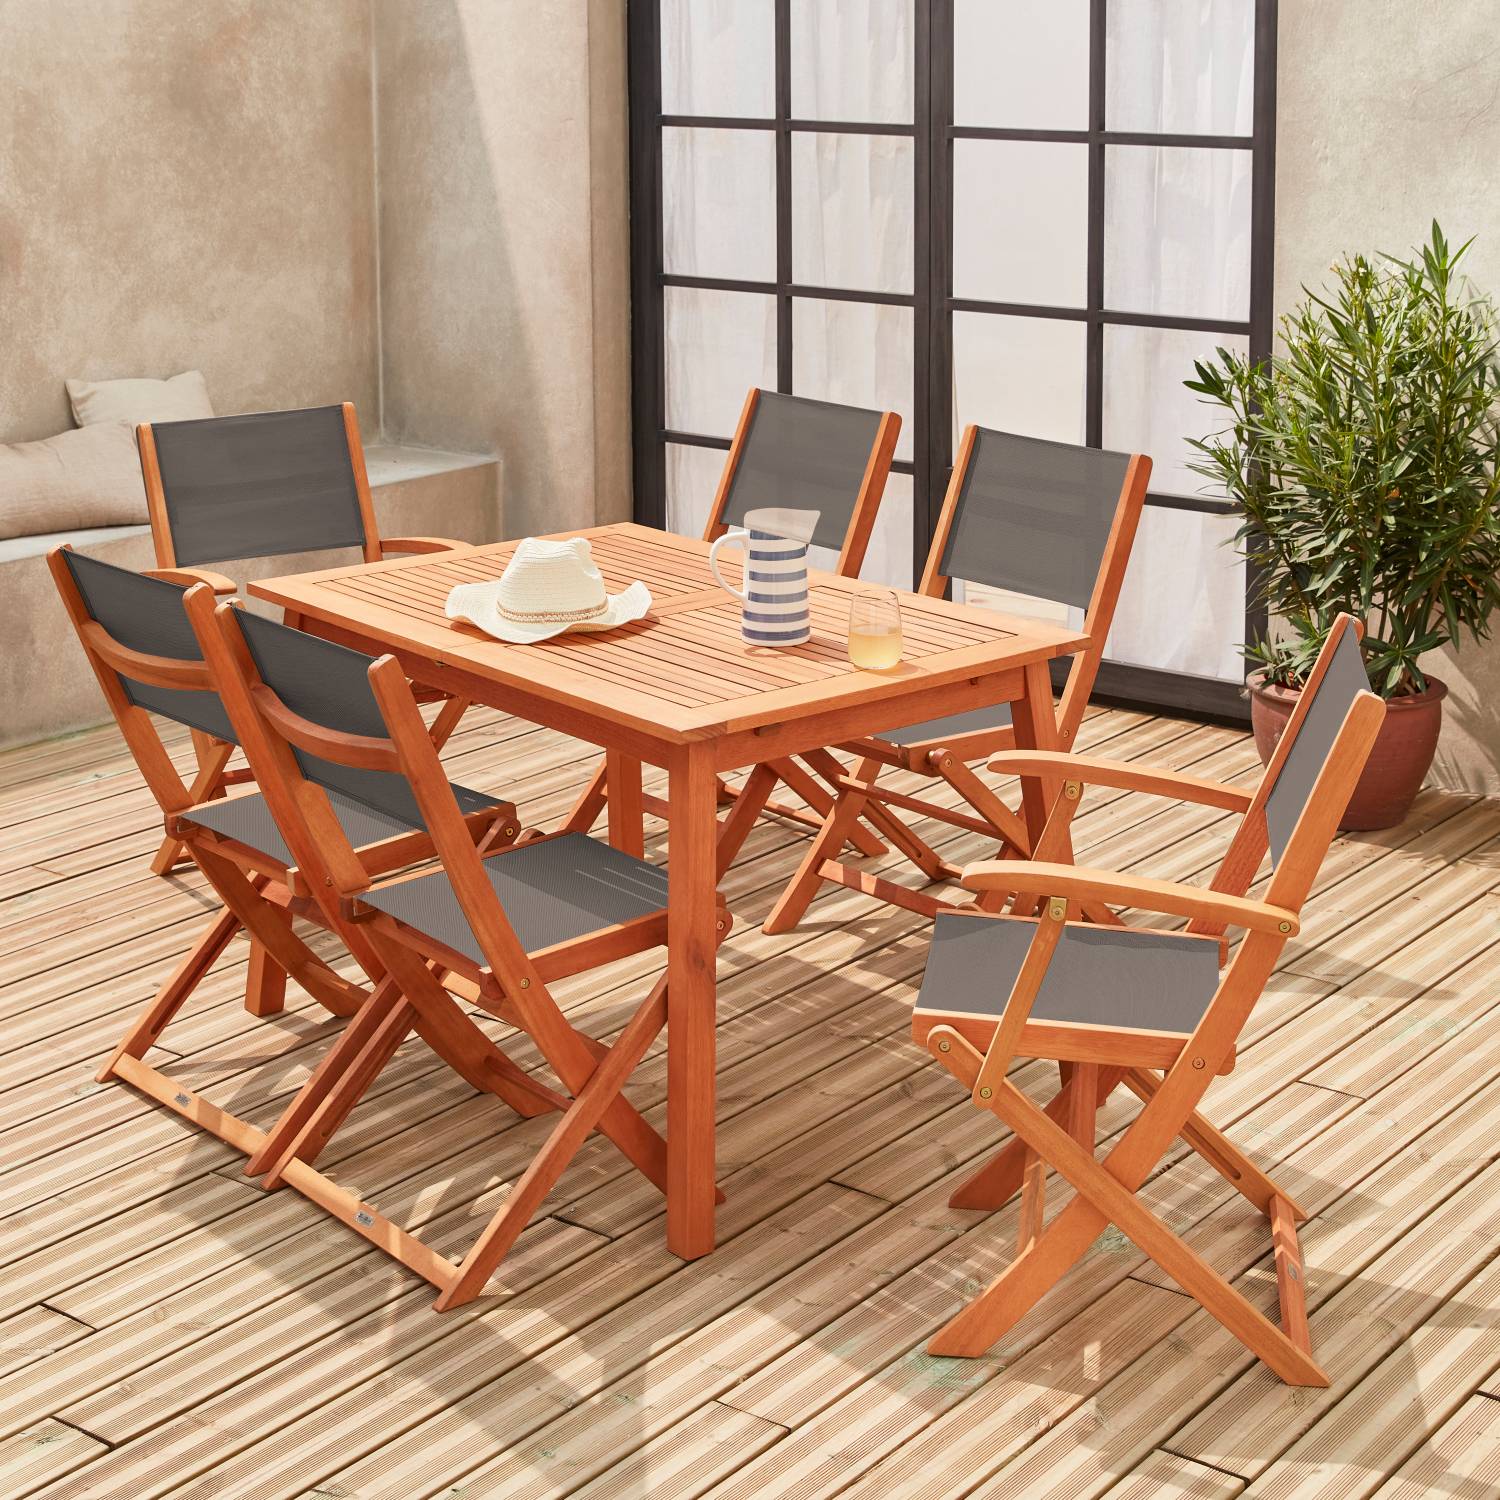 Salotto da giardino in legno - Almeria, tavolo 120-180cm rettangolare, 2 poltrone e 4 sedie, eucalipto FSC e textilene antracite | sweeek